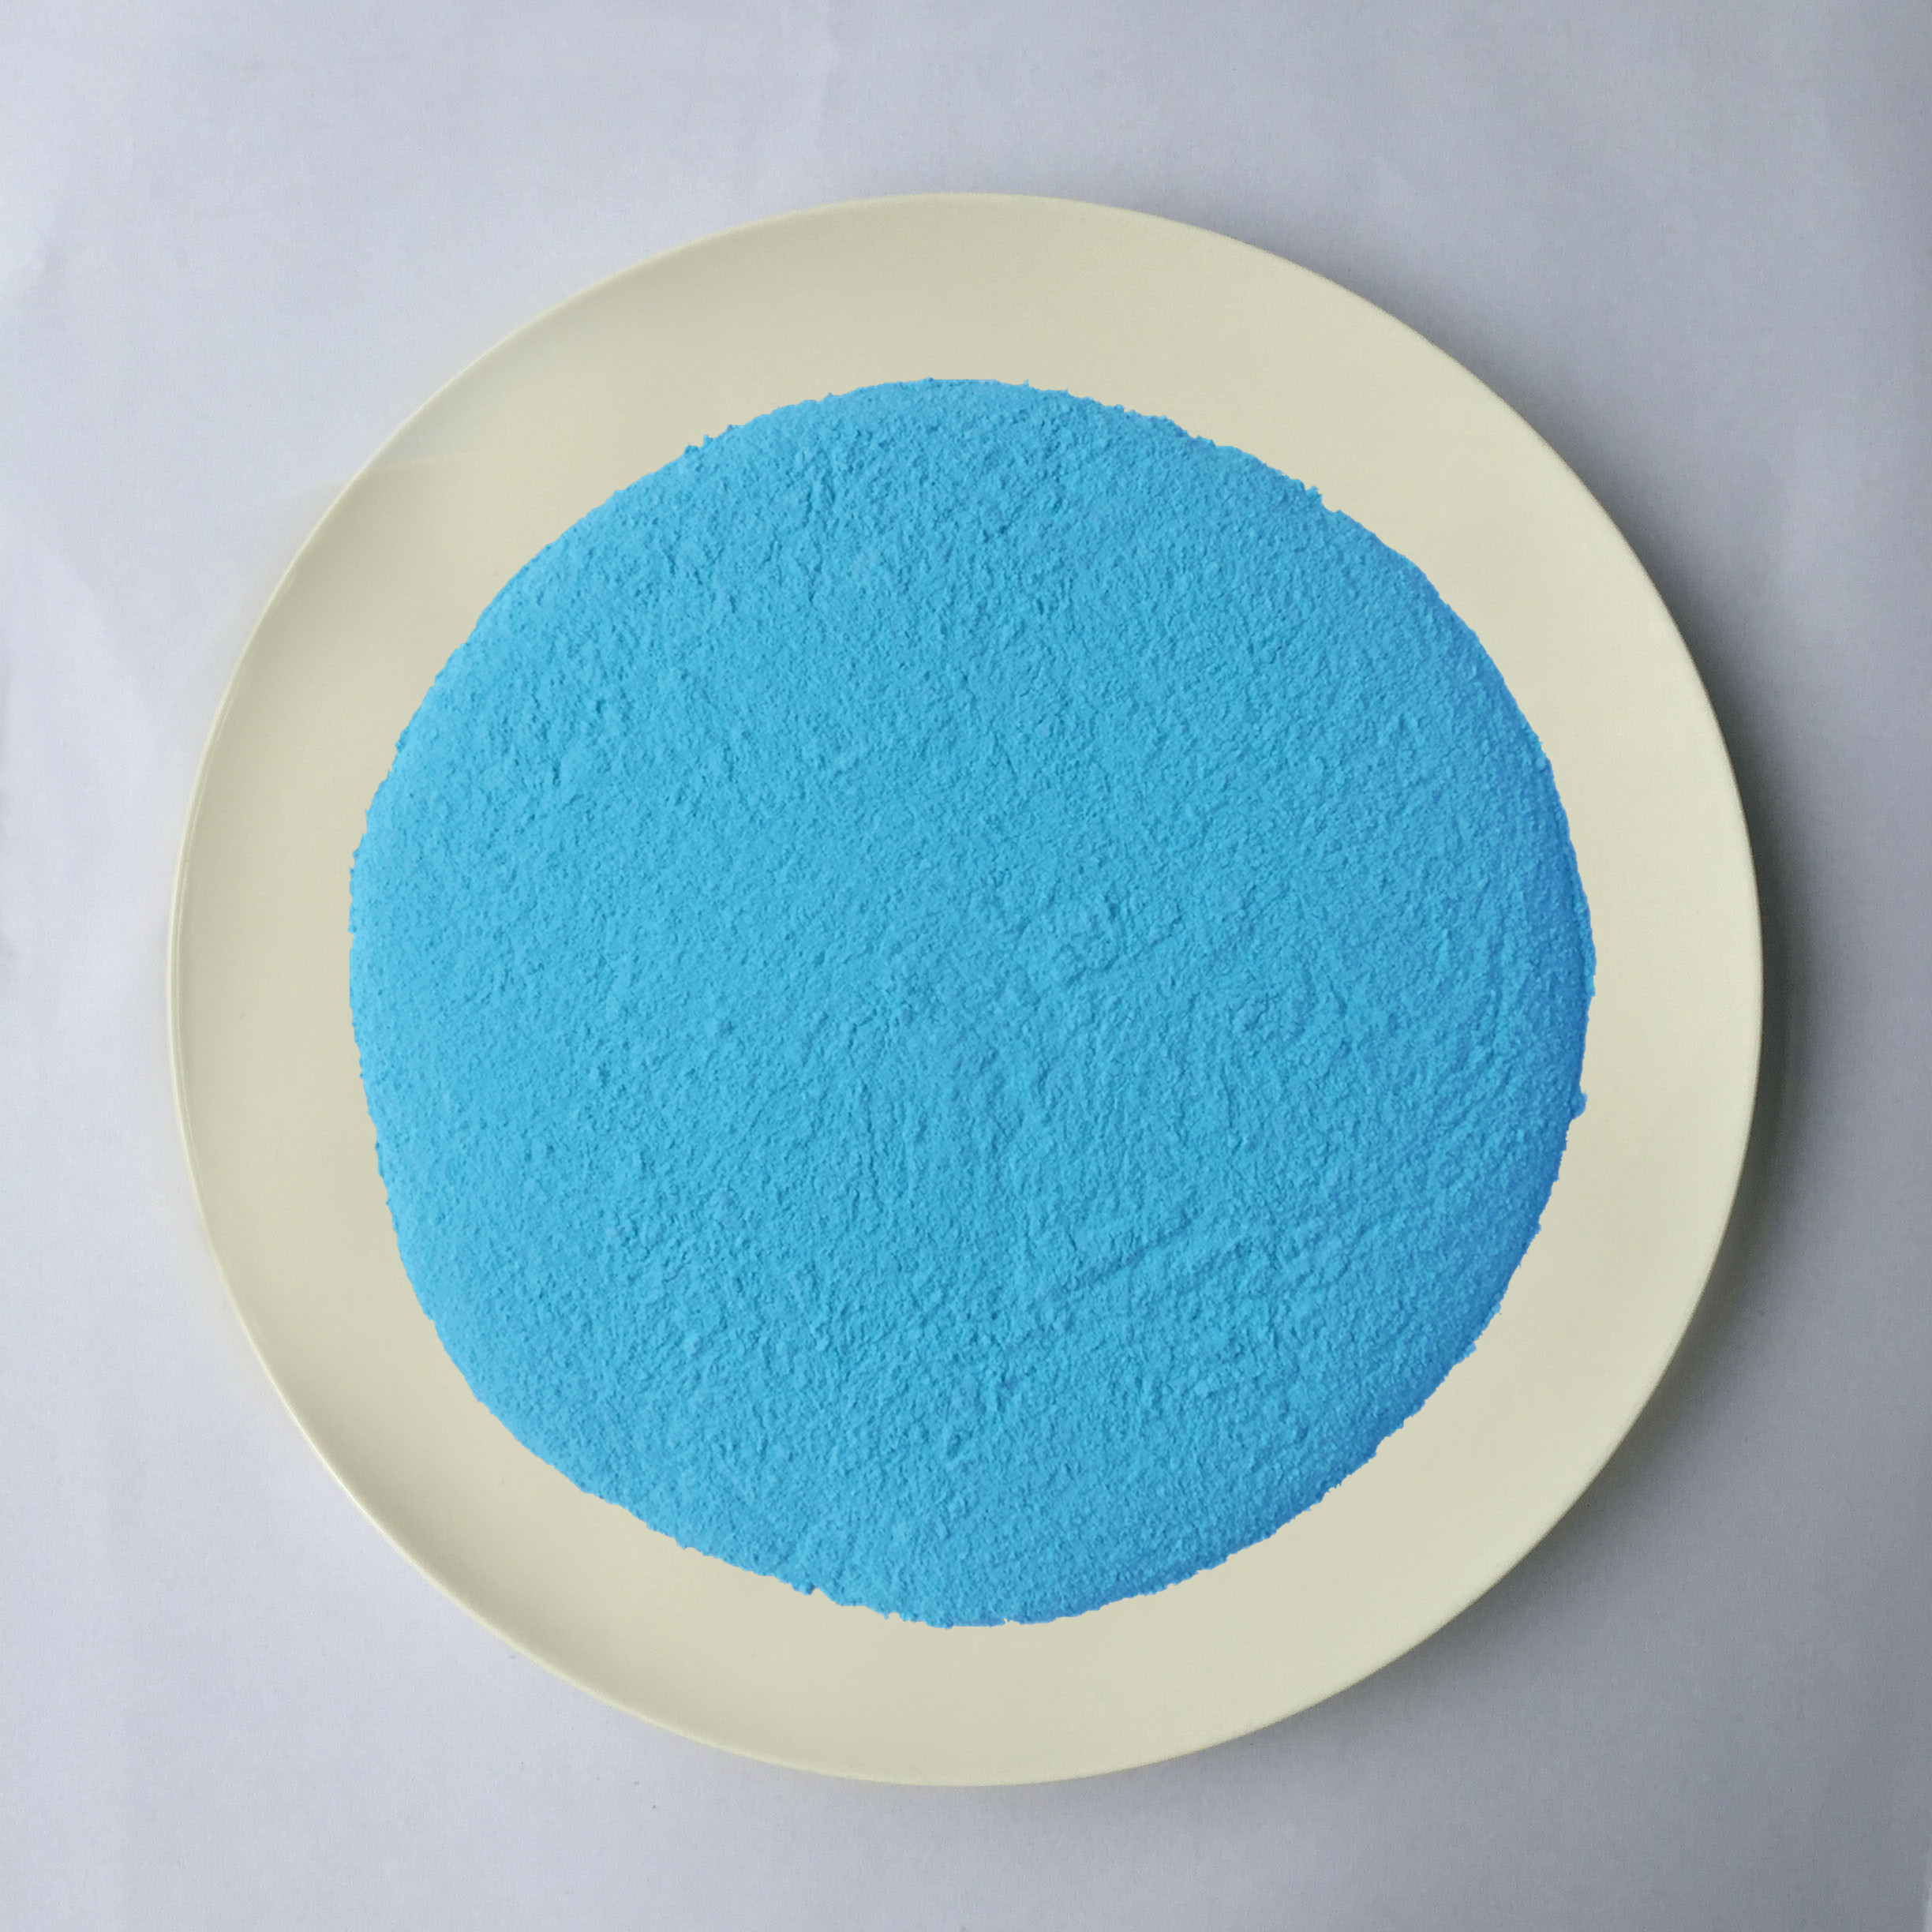 Φωτεινή μπλε πλαστική σκόνη σχήματος μελαμινών πρώτης ύλης